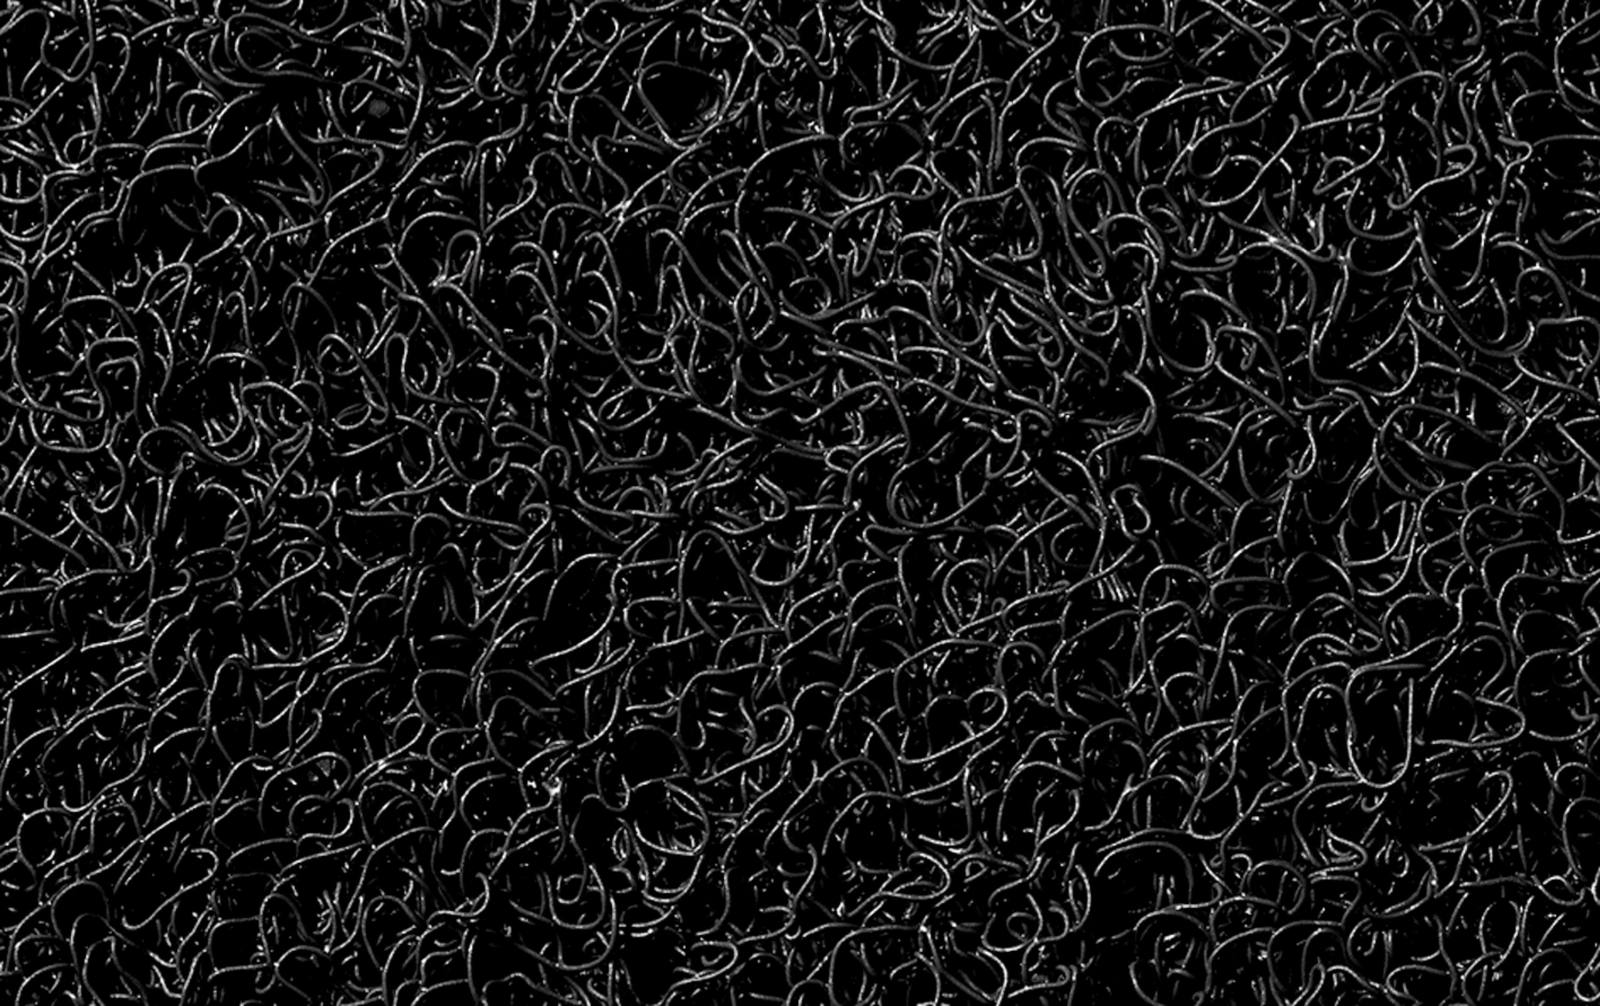 3M Tapis de sol Nomad Terra 6850, noir, 1,2 m x 6,1 m